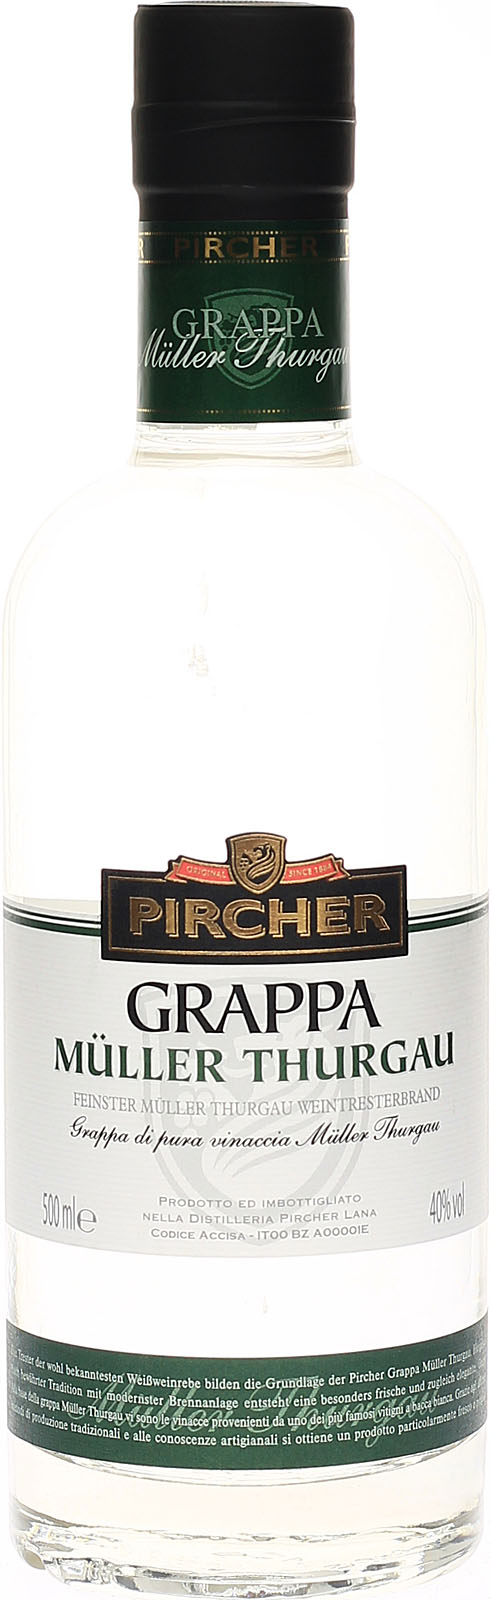 Pircher Grappa Müller Thurgau 500ml 40%